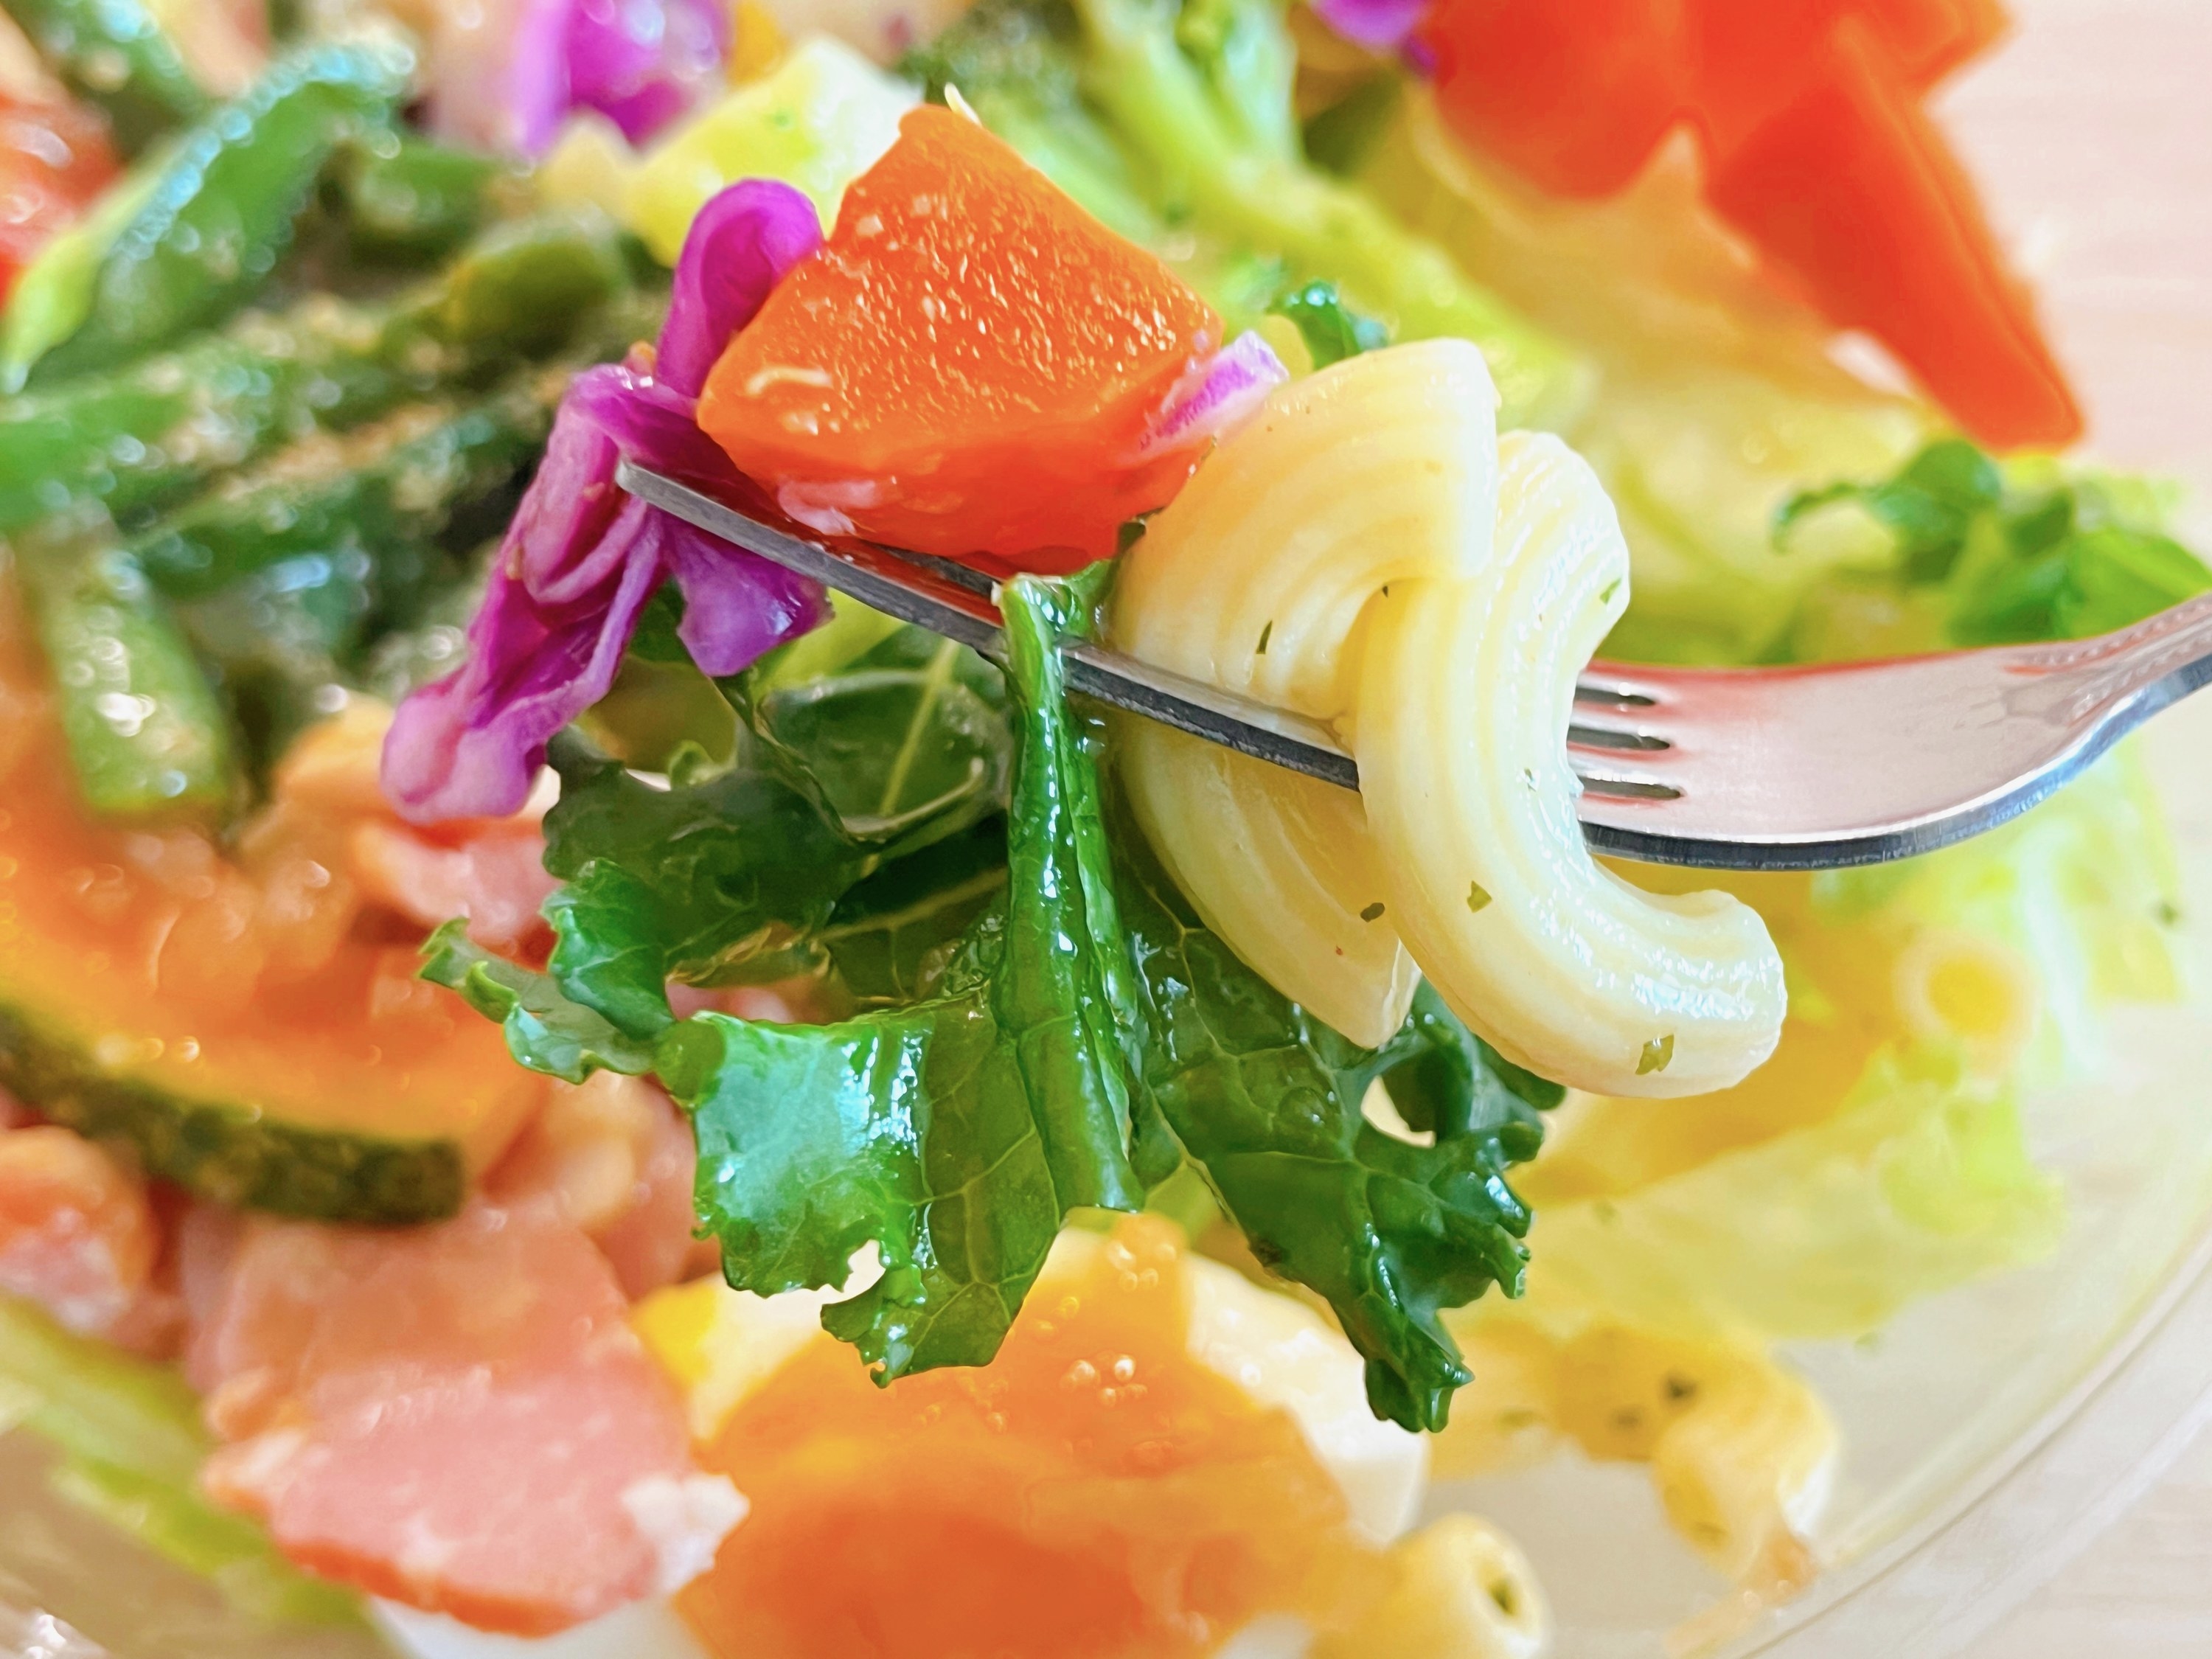 FamilyMart（ファミリーマート）のオススメのサラダ「1/2日分の緑黄色野菜のサラダ」